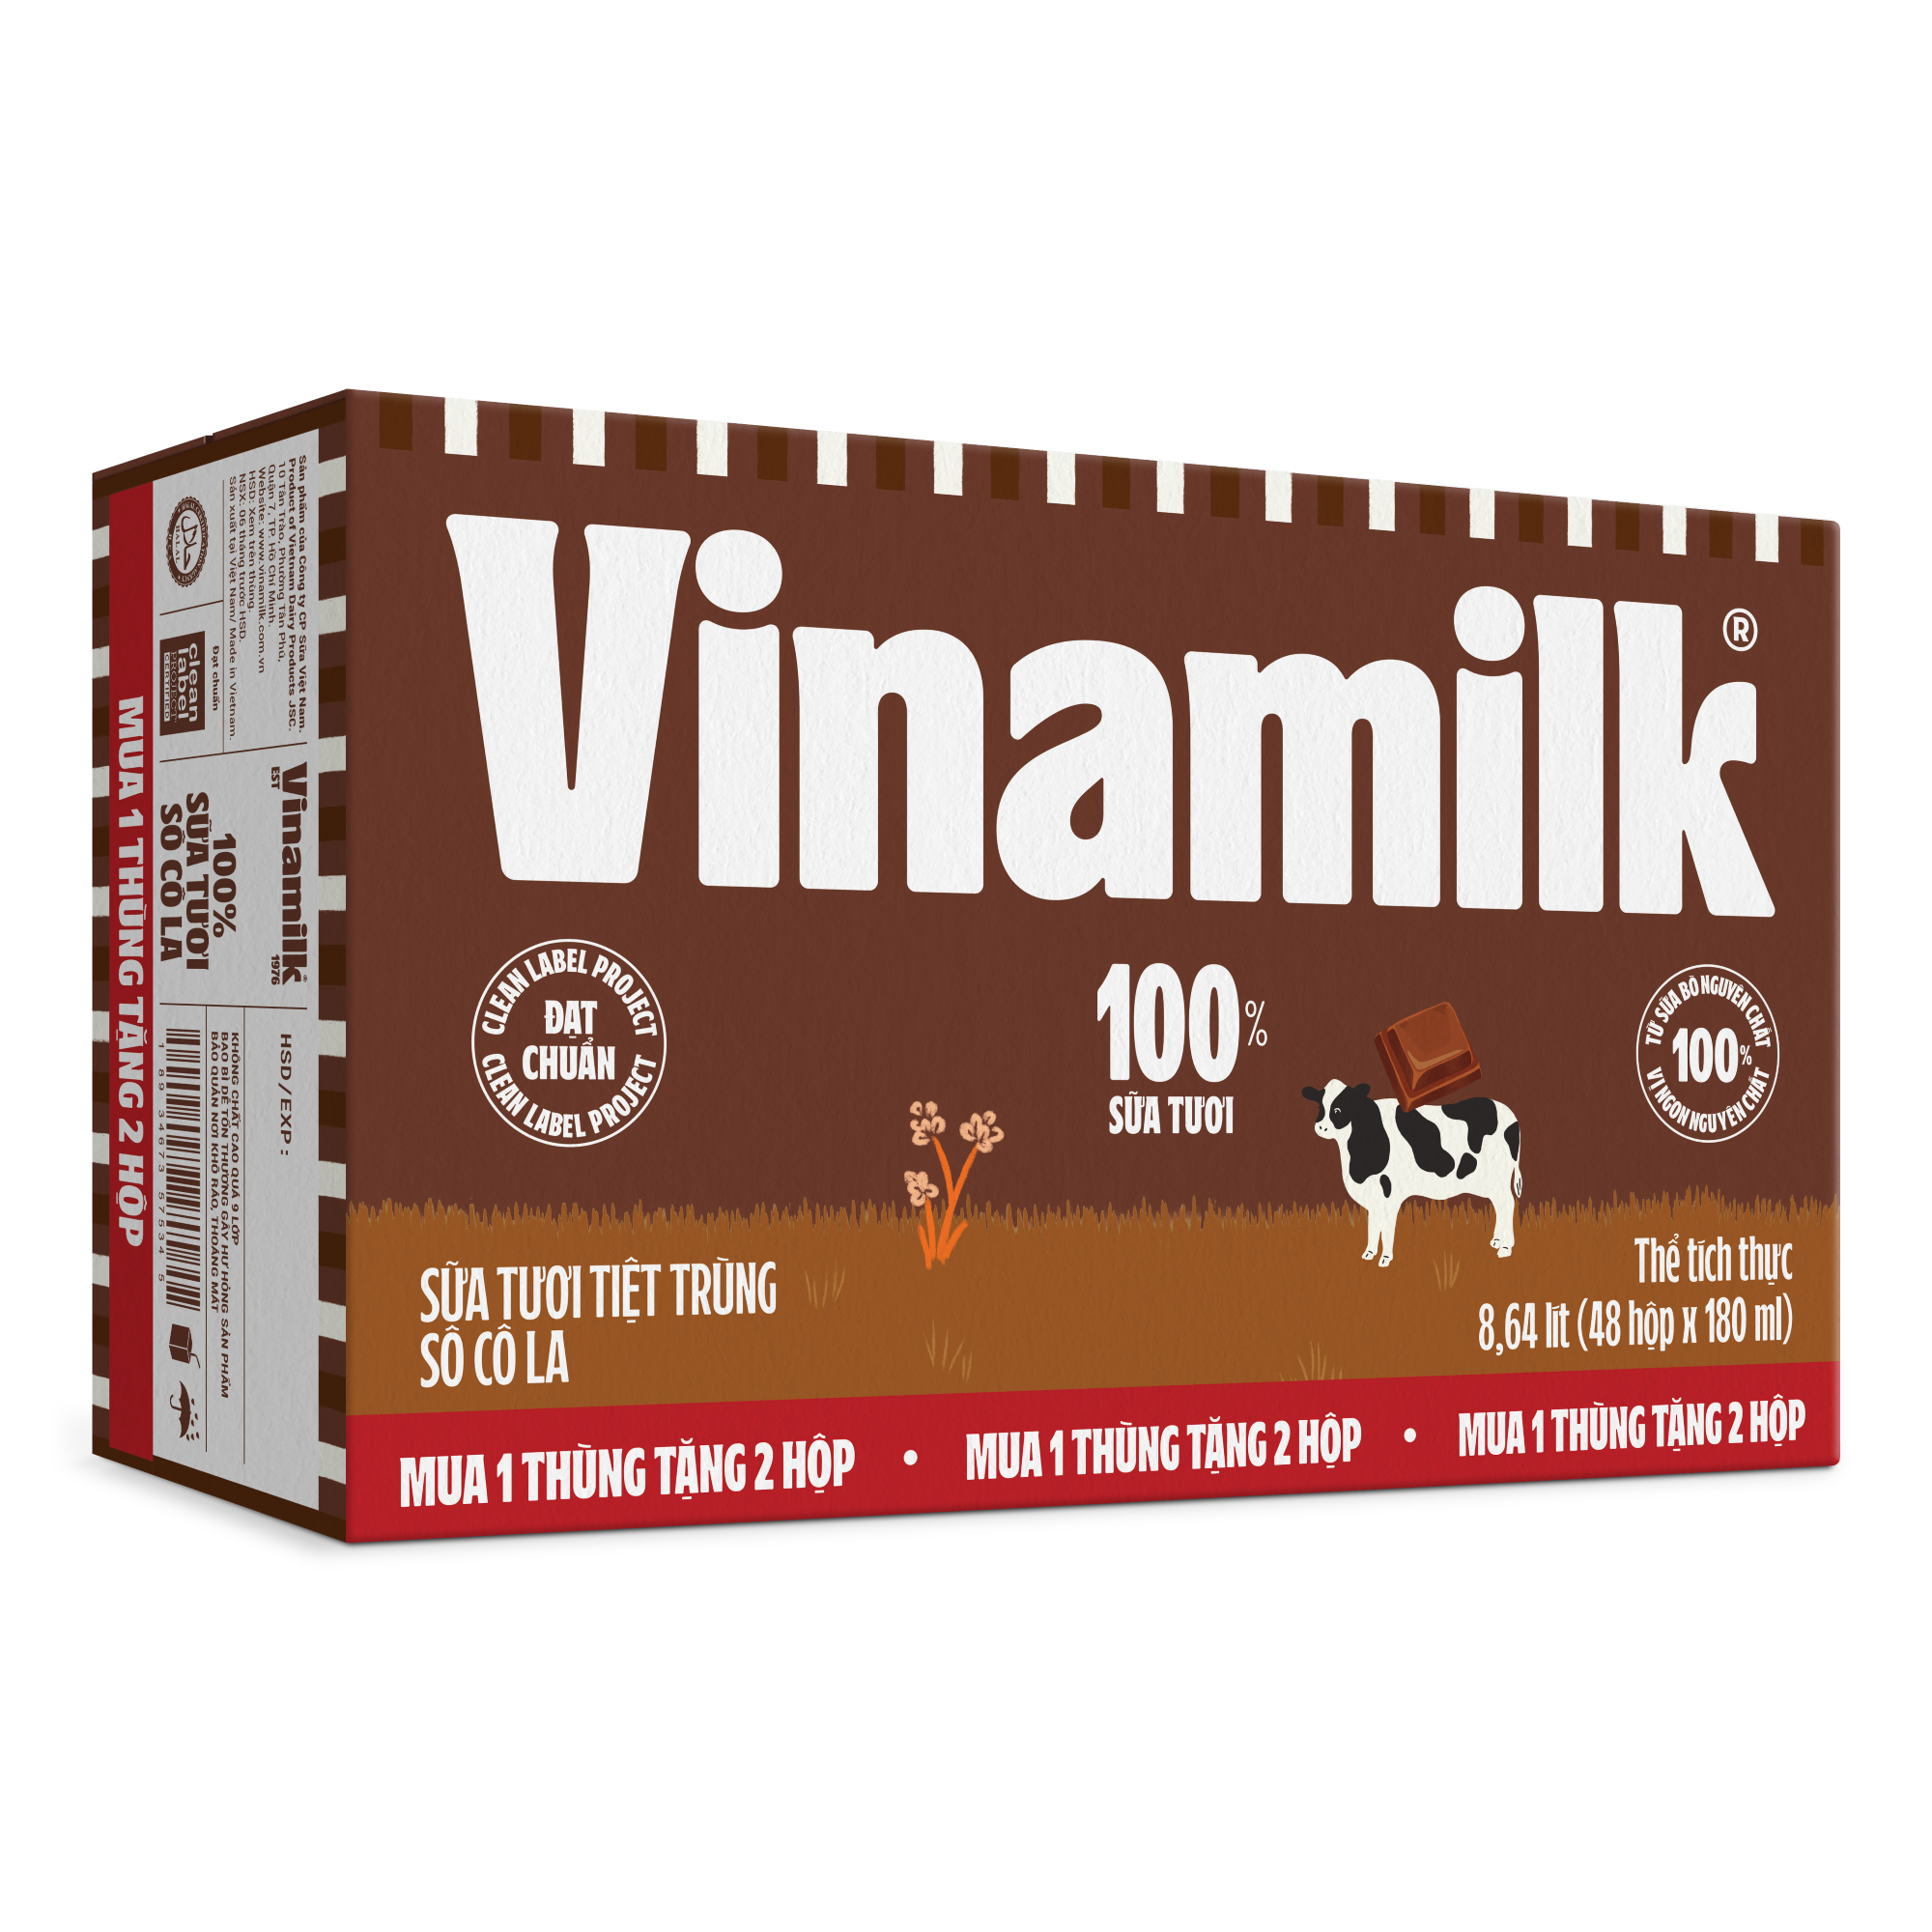 [TẶNG 2 HỘP] Thùng 48 Hộp Sữa tươi tiệt trùng Vinamilk 100% Socola 180ml